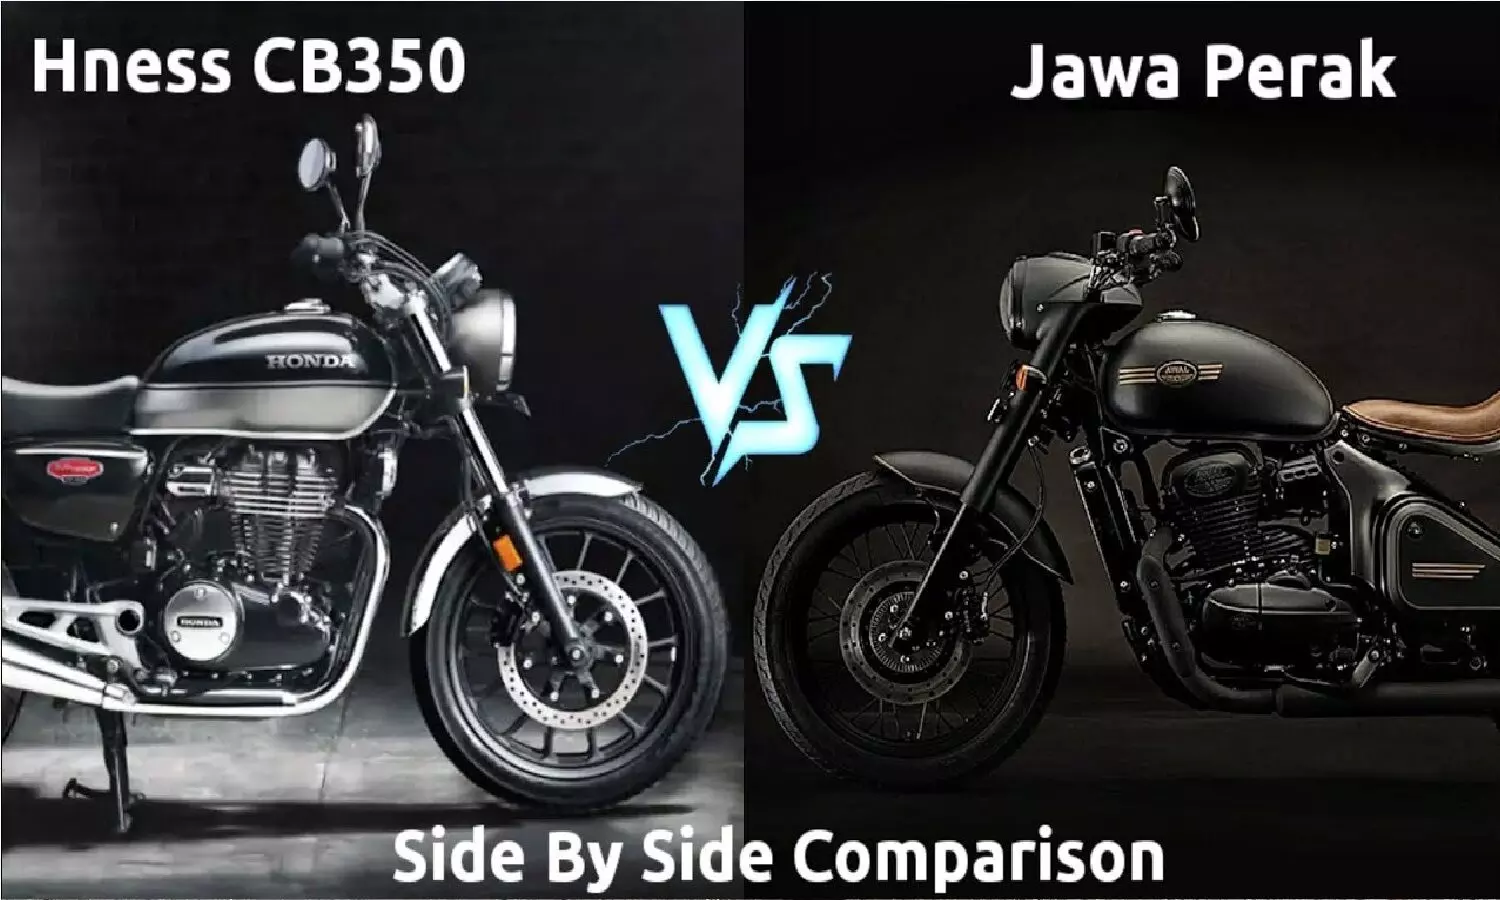 Jawa Perak Vs Honda Hness CB350: कौन सी बाइक है बेस्ट